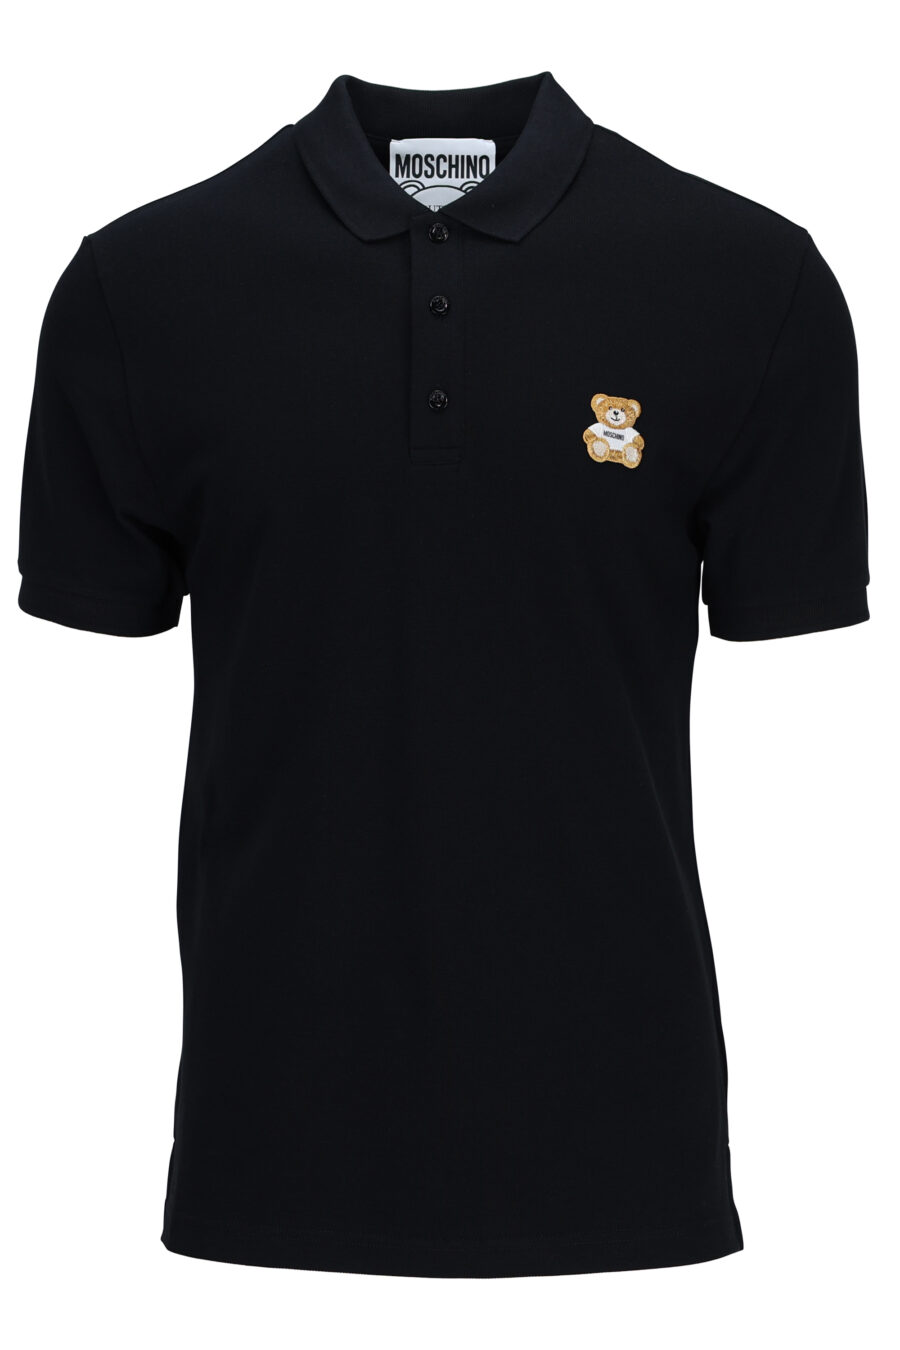 Schwarzes Poloshirt mit Bärchen-Mini-Logo - 889316660906